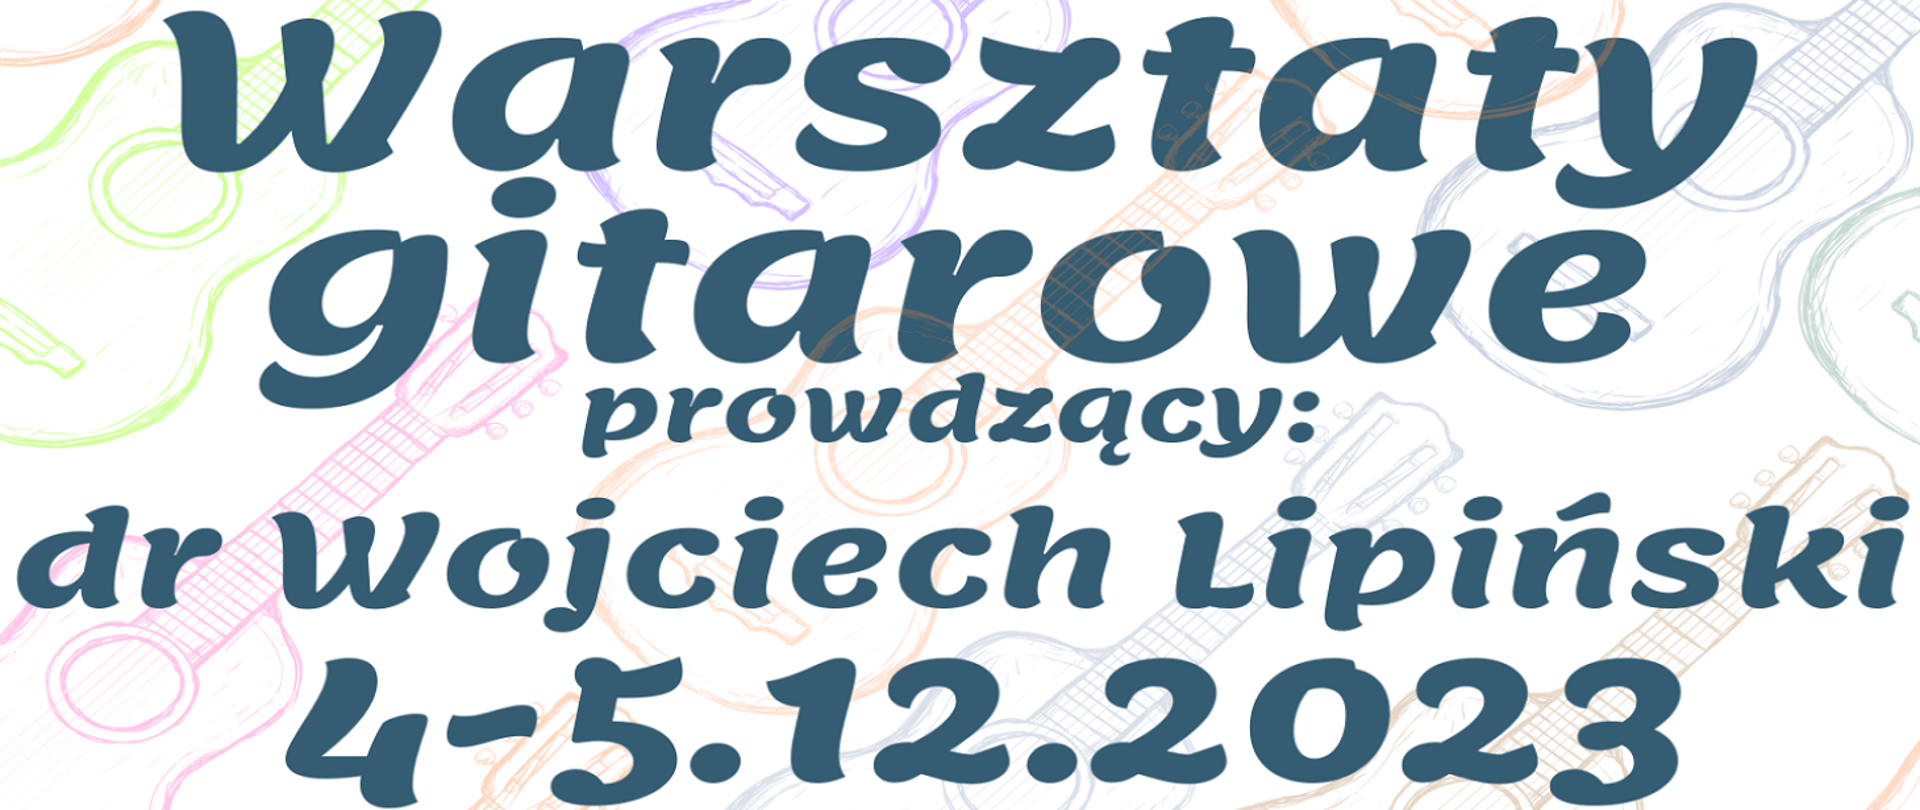 Na tle kolorowych gitar znajduje się napis informujący o odbywających się w dniach 4-5.12.2023 Warsztatach Gitarowych prowadzonych przez dr Wojciecha Lipińskiego. 